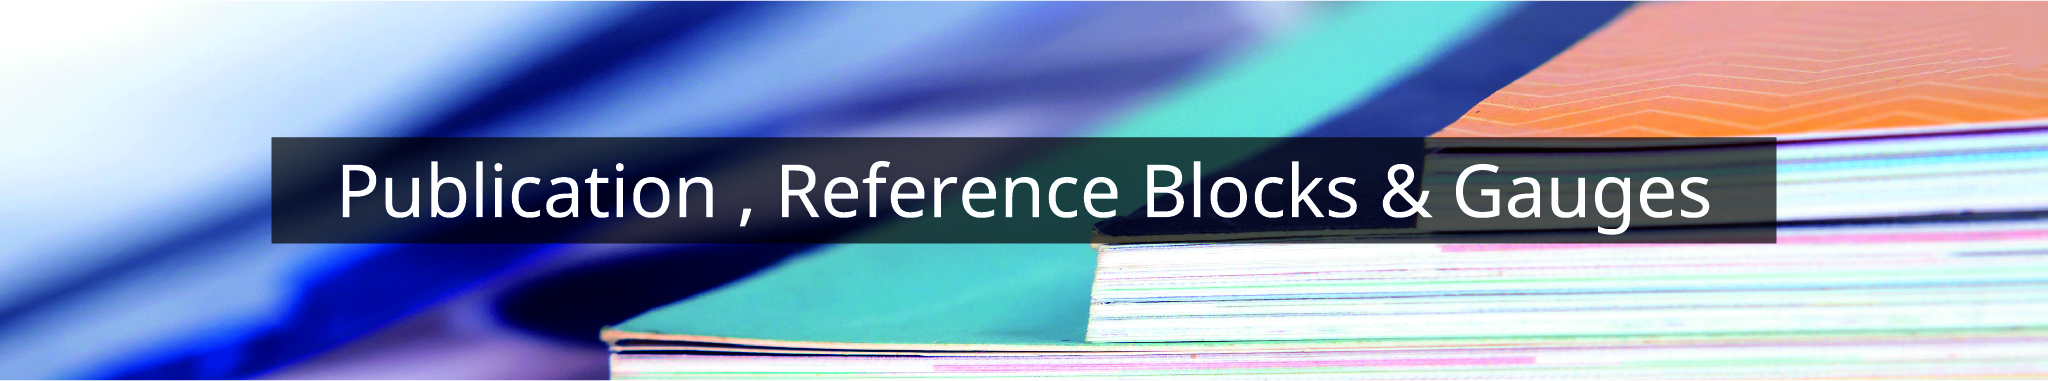 Publication,Reference Blocks & Gauges